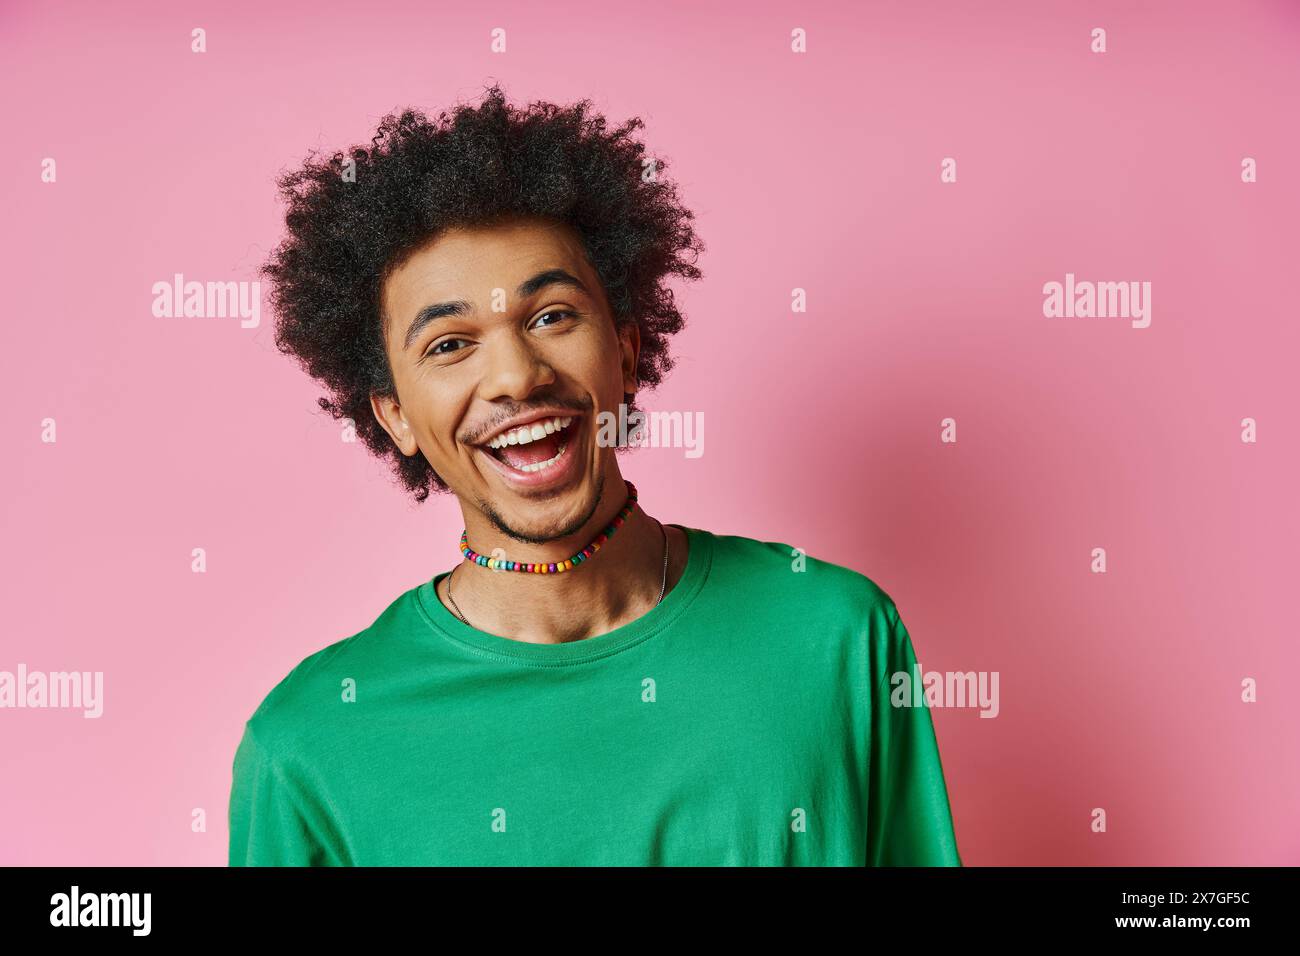 Ein fröhlicher Afroamerikaner mit einem lockigen Afro, der ein grünes Hemd trägt und Emotionen auf rosa Hintergrund ausdrückt. Stockfoto